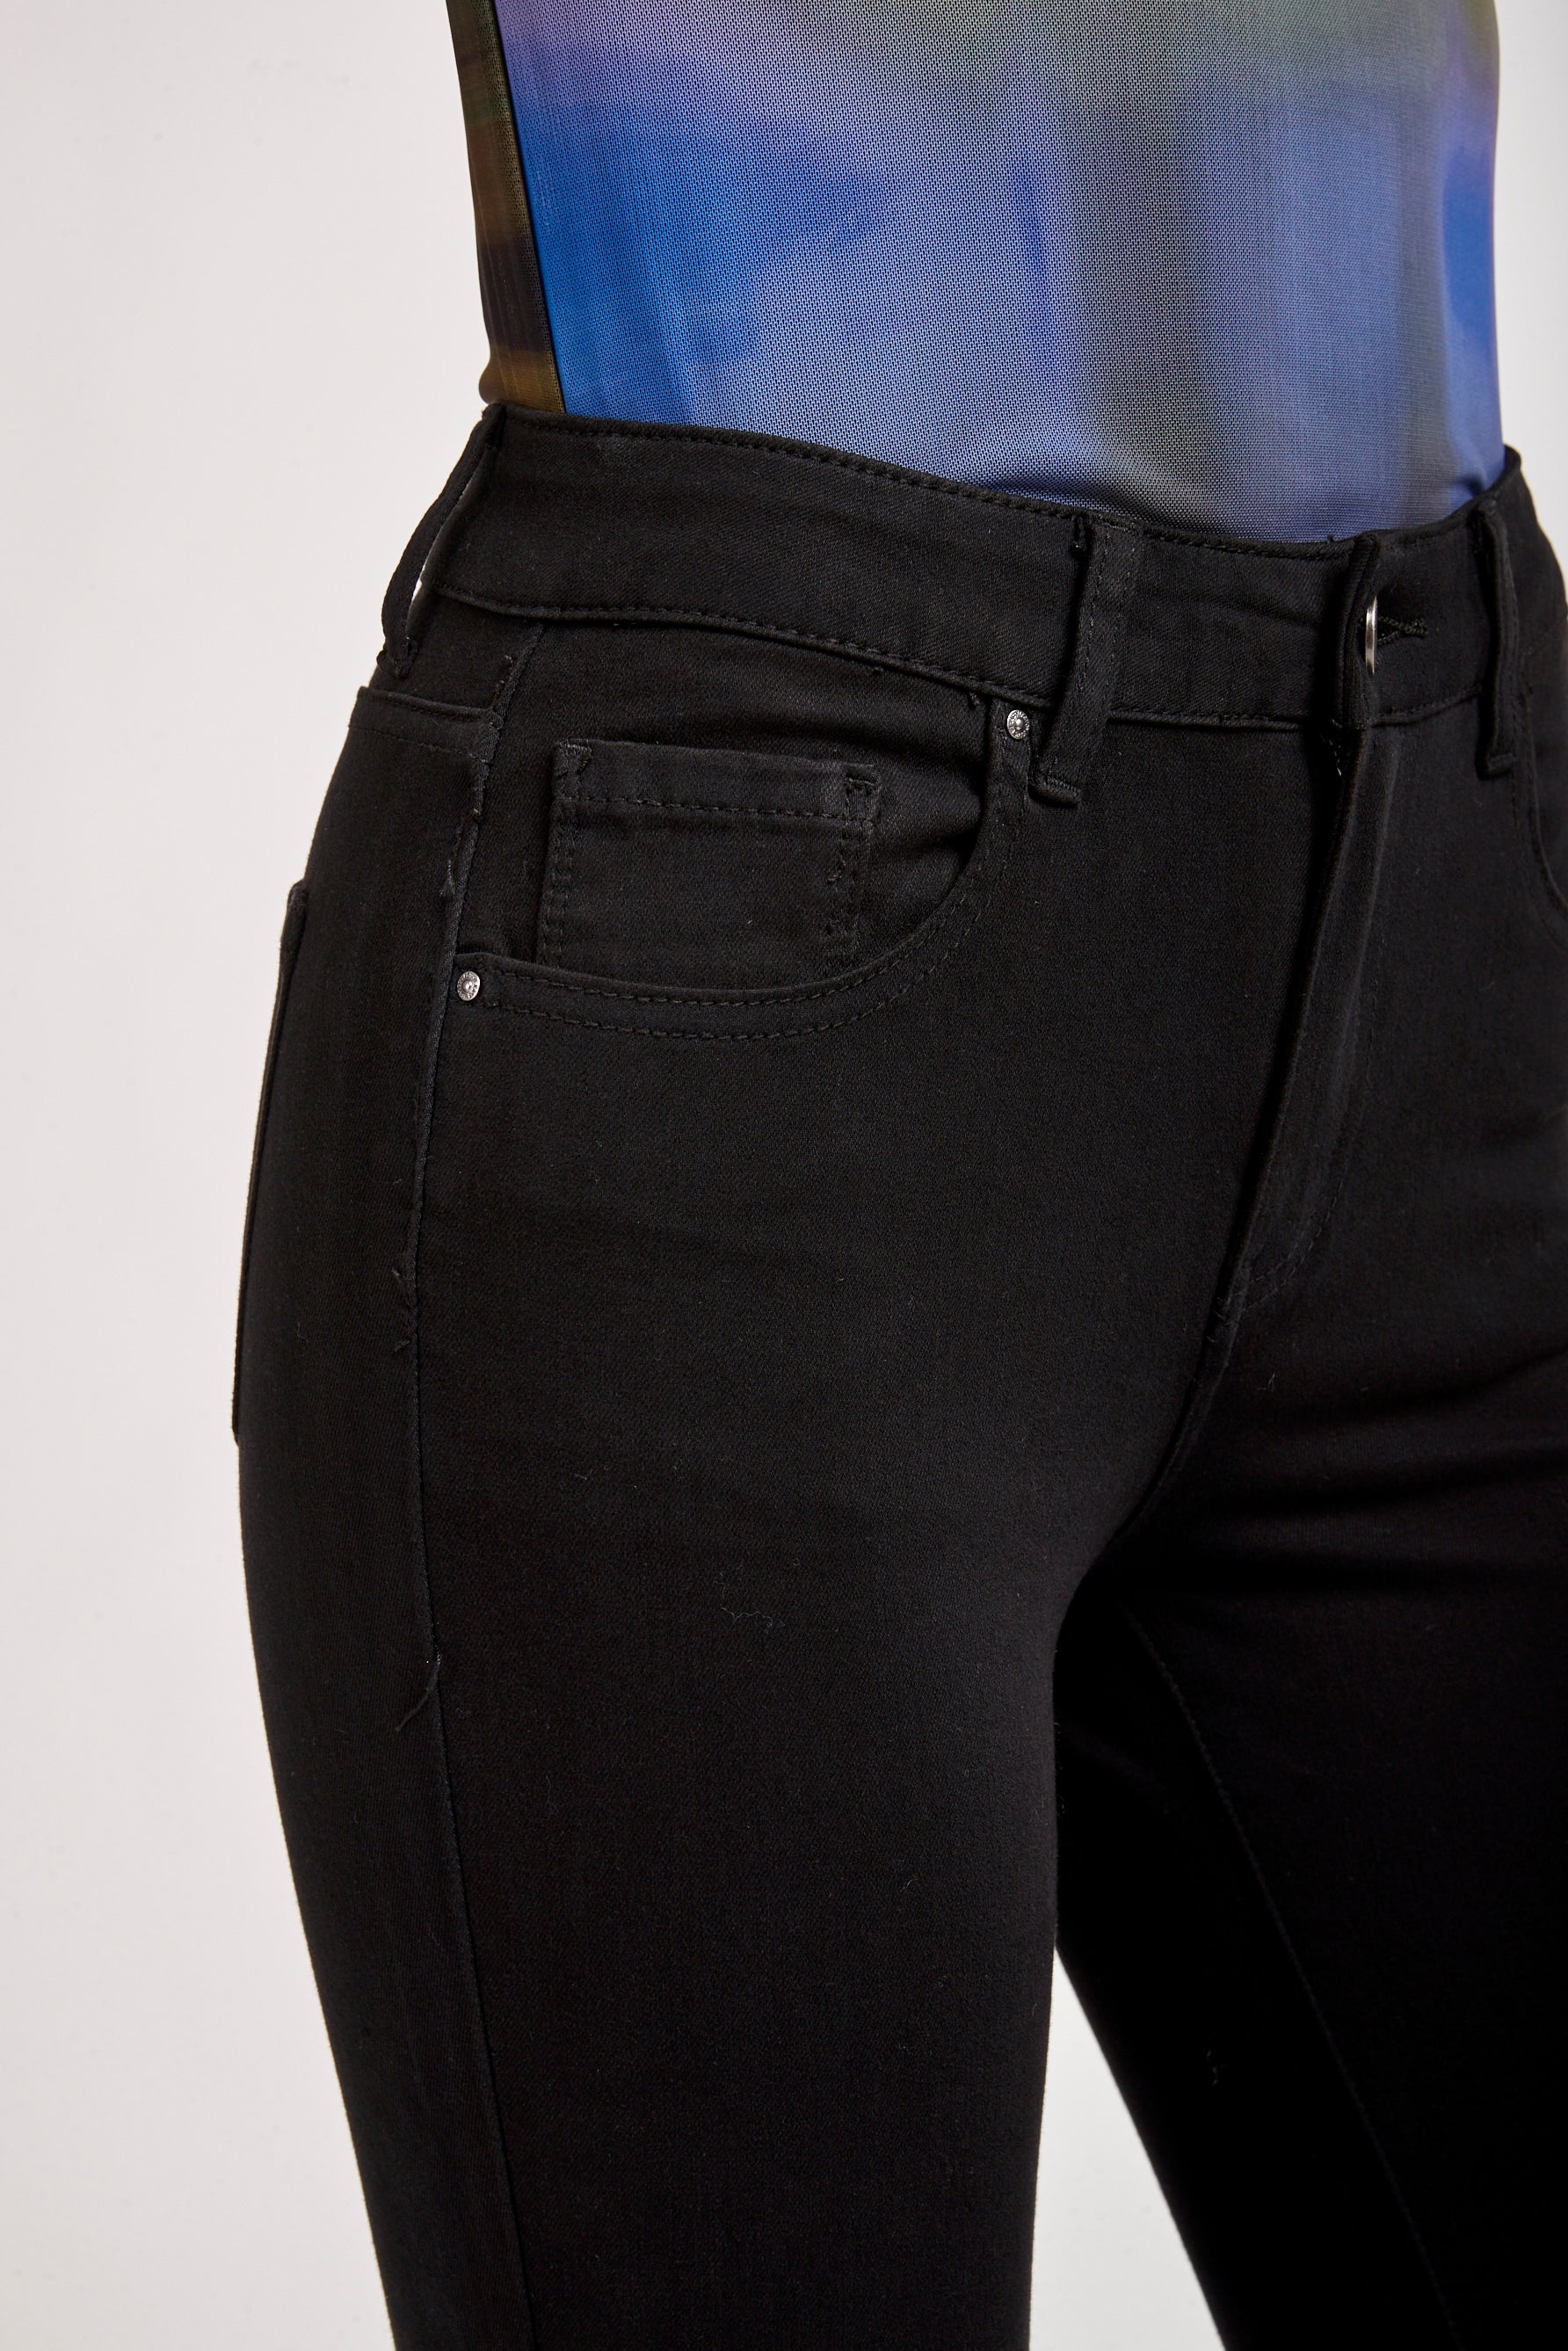 360 ° stretch jeans - flex winx